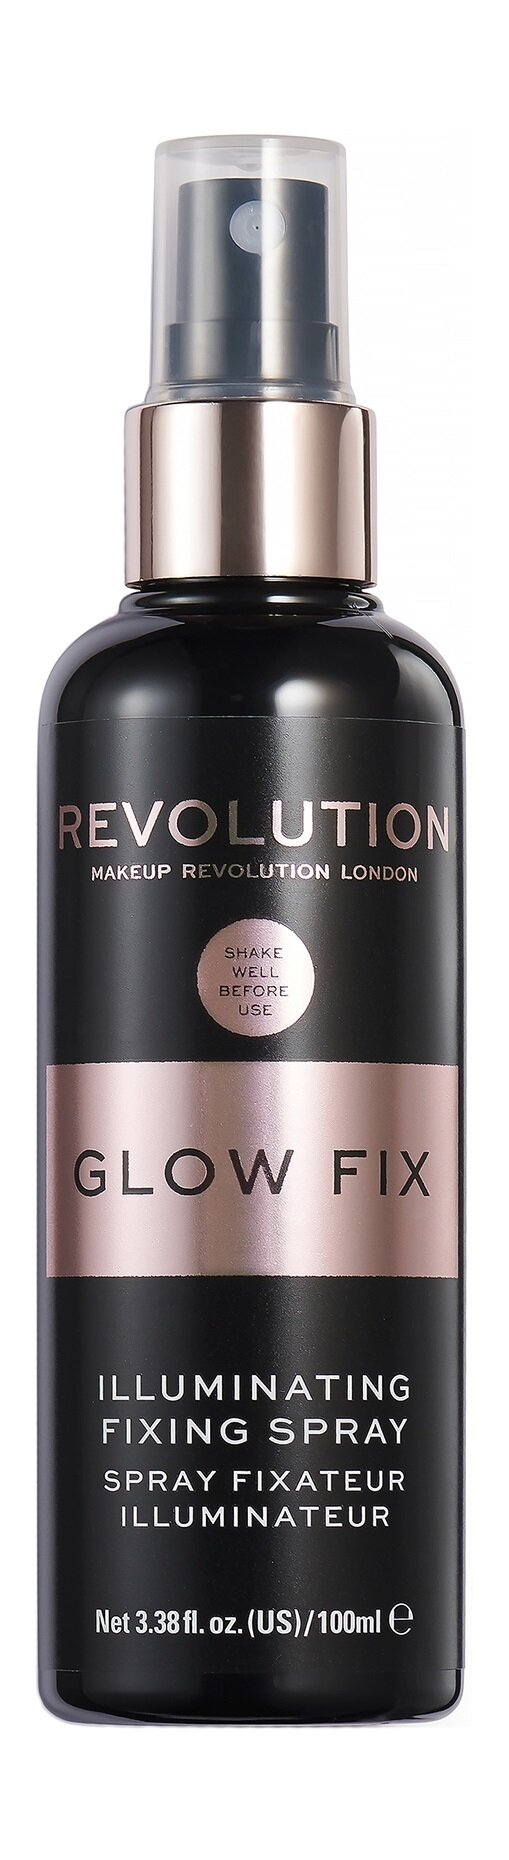 Спрей для фиксации макияжа со светоотражающими частицами / Revolution Makeup Illuminating Fixing Spray